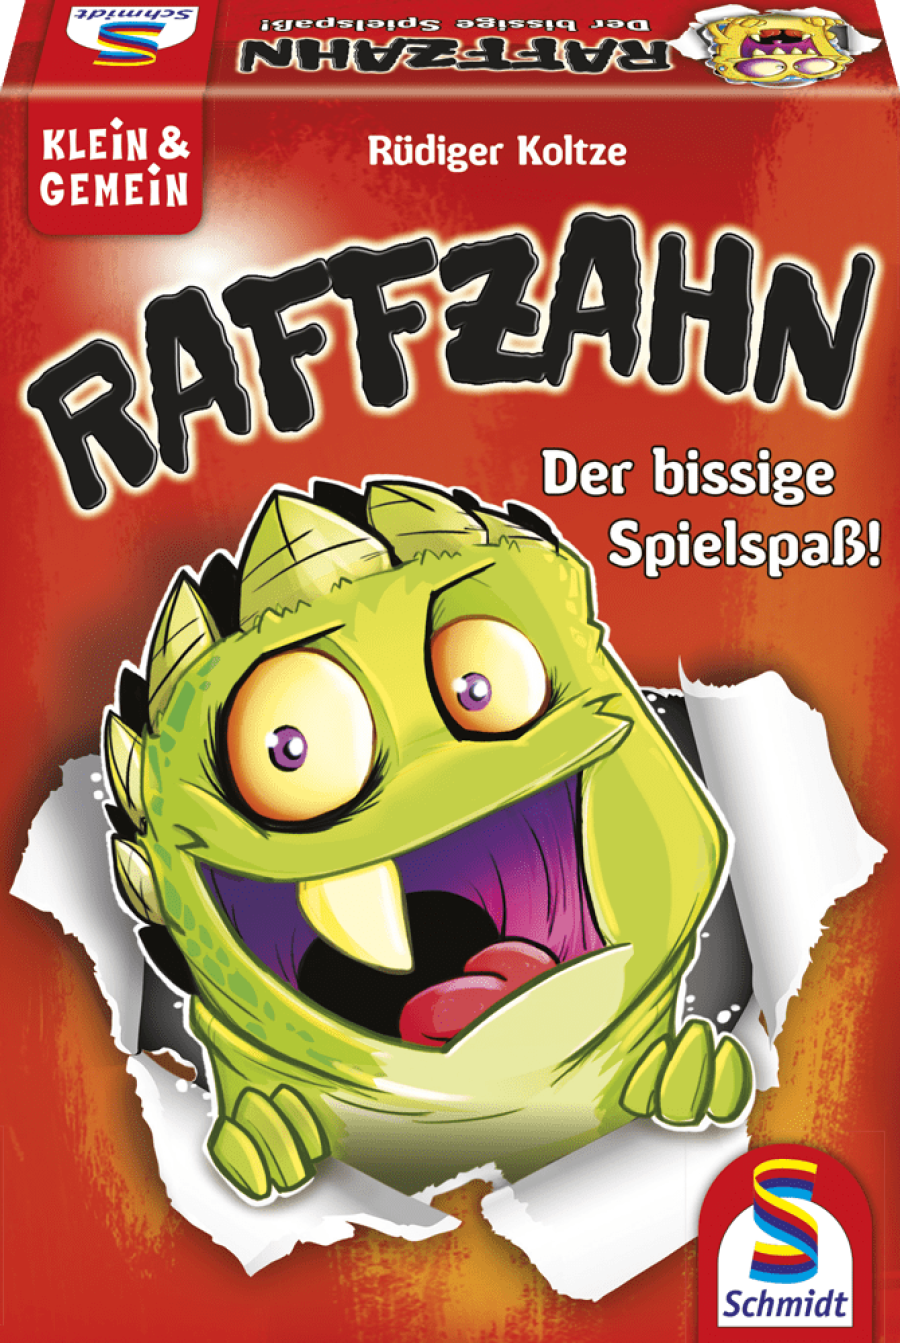 Raffzahn Spielanleitung - PDF Download